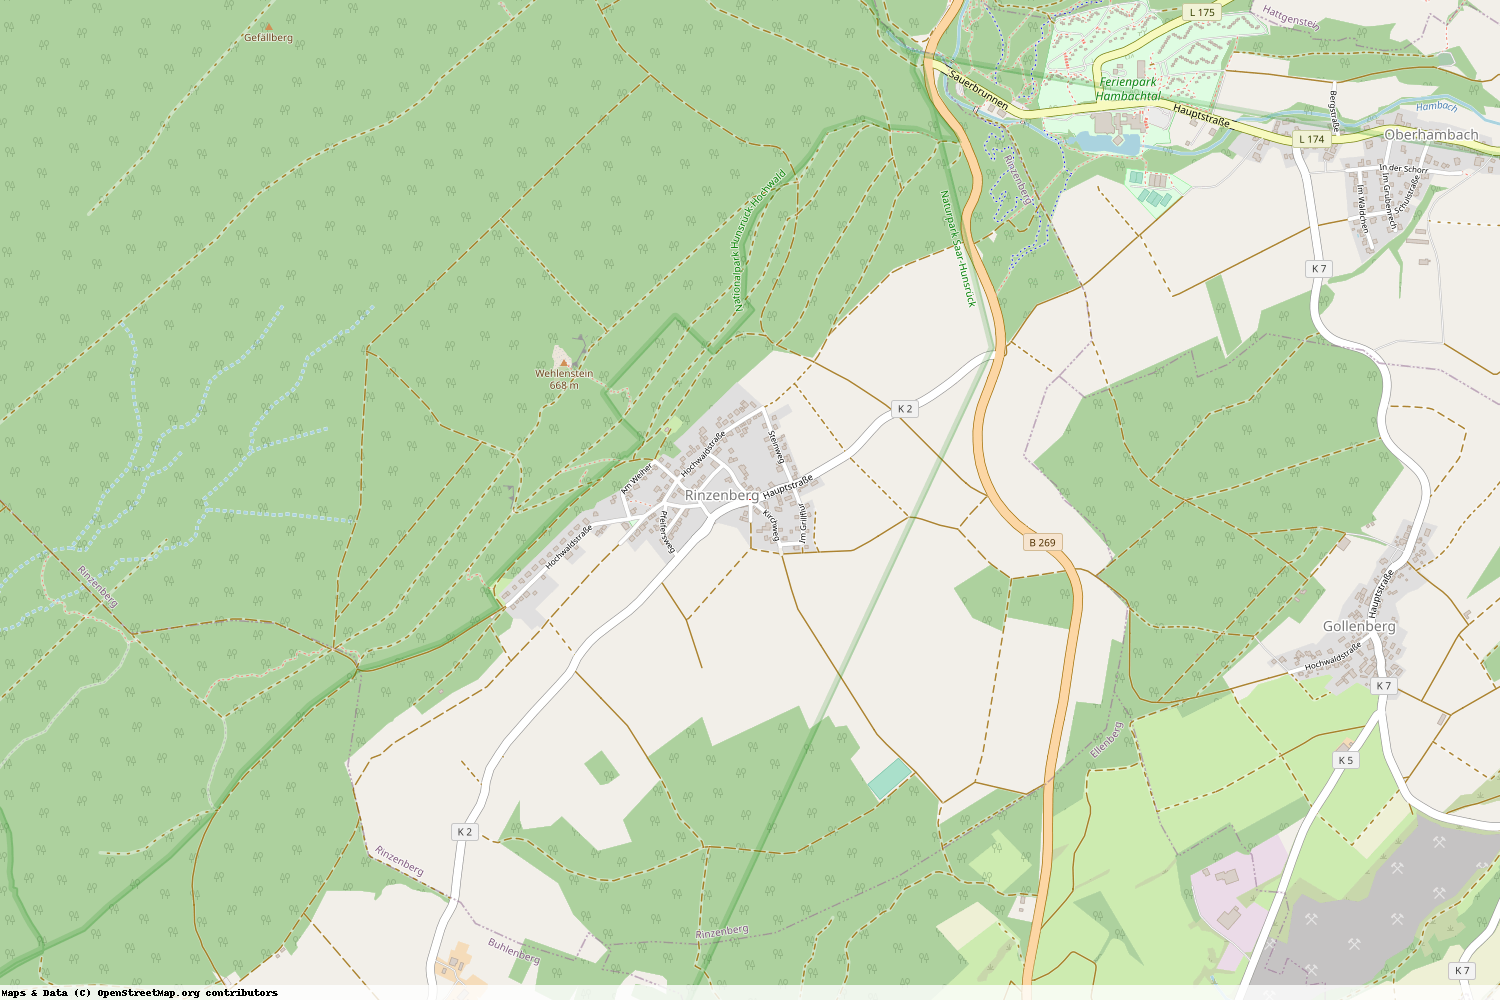 Ist gerade Stromausfall in Rheinland-Pfalz - Birkenfeld - Rinzenberg?